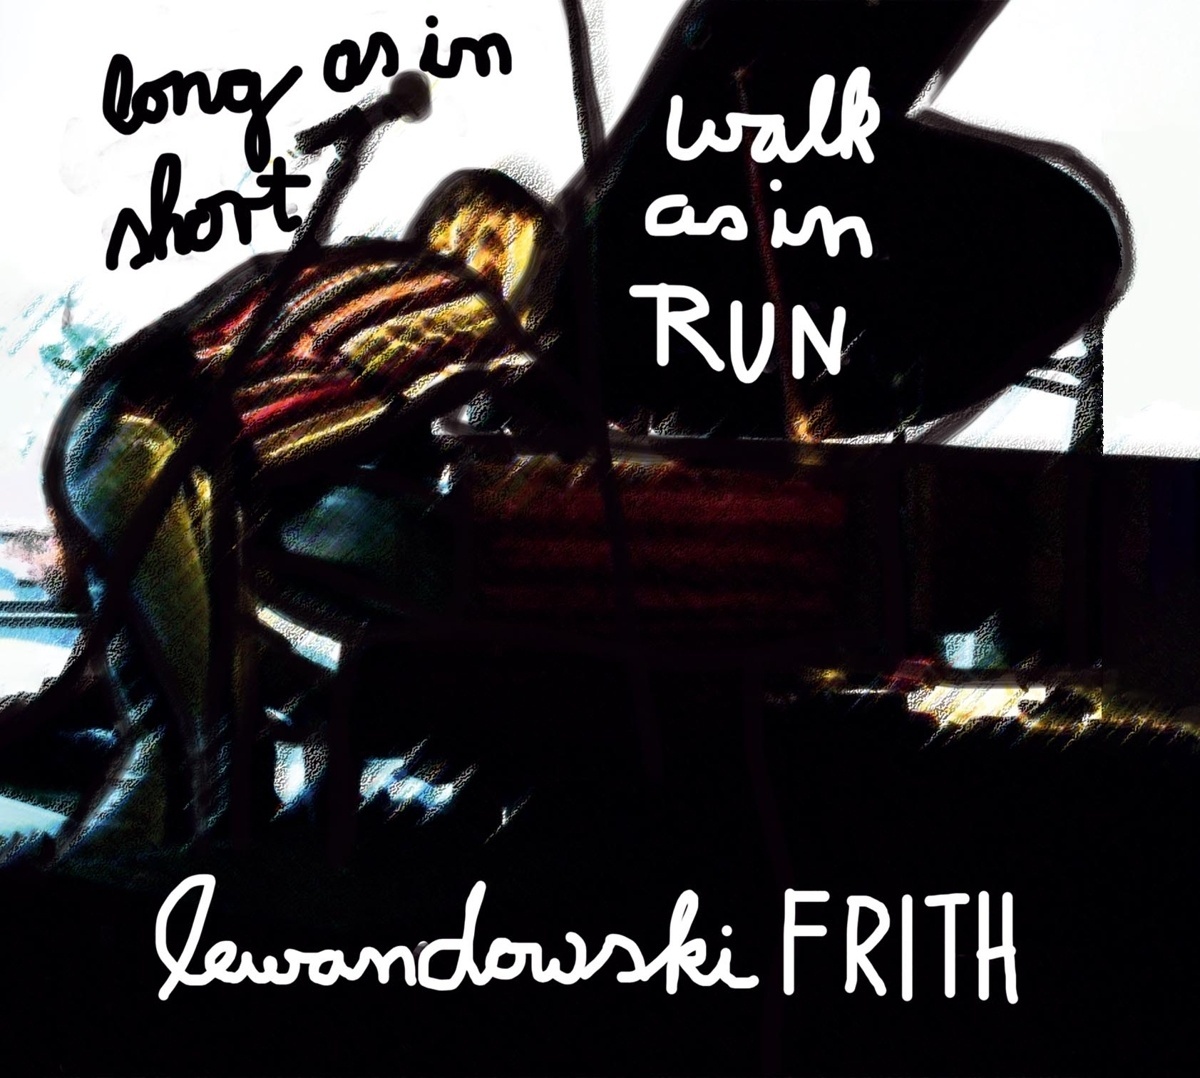 Long As In Short Walk As In Run - Annie Lewandowski  Fred Frith. (CD)